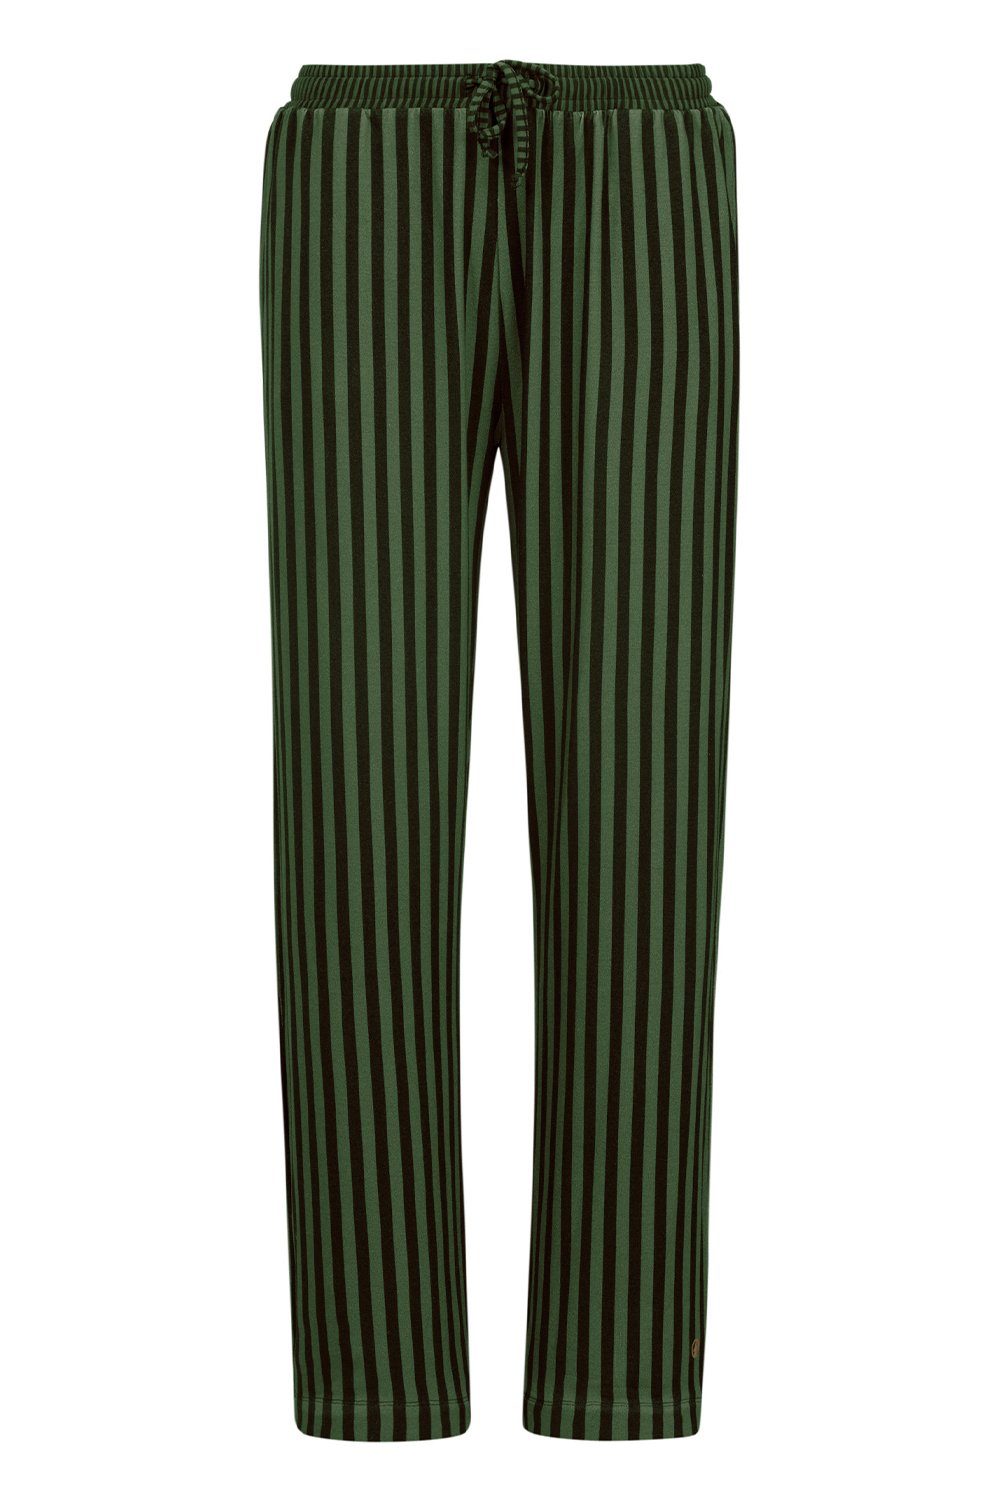 PiP Studio Loungehose Belin Sumo Stripe Trousers Long 51500718-734 dark green